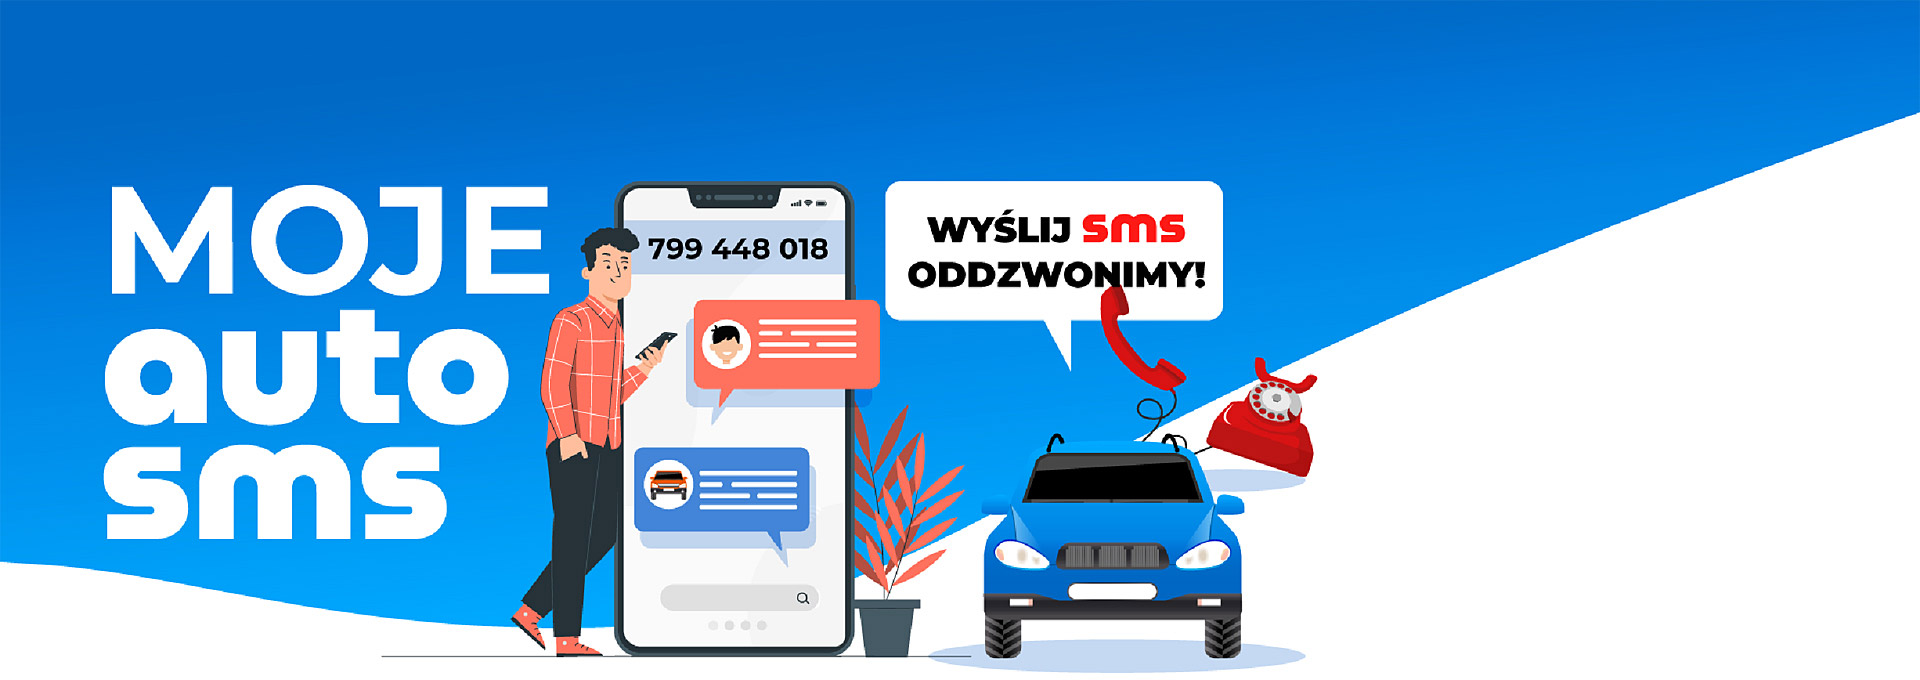 Biały napis Moje Auto SMS na niebieskim tle. Obok mężczyzna, smartfon wielkości człowieka i napis: wyślij SMS oddzwonimy.